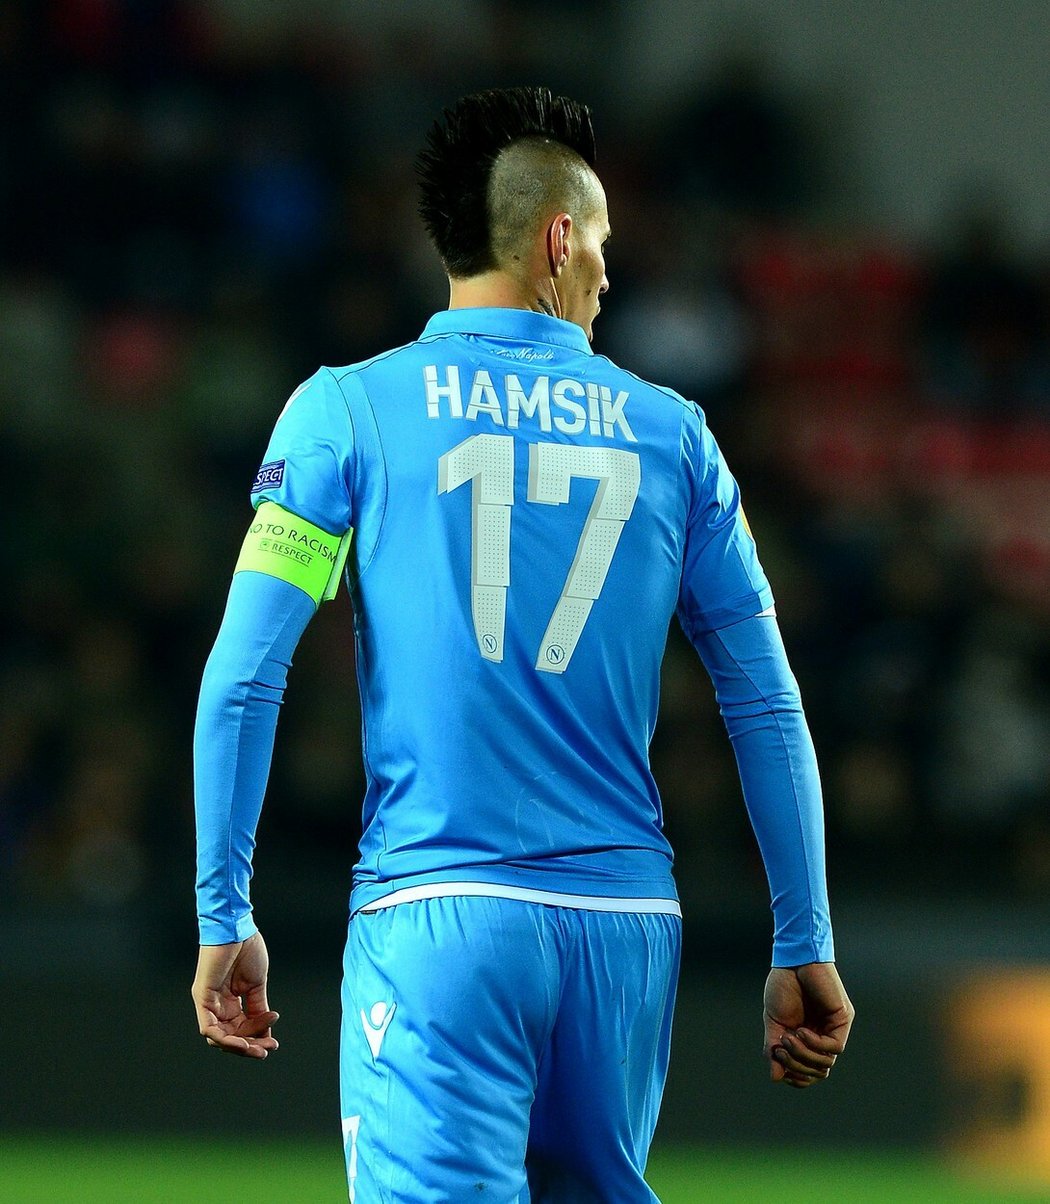 Fotbalista Marek Hamšík neměl jednoduché dětství. Jeho otec musel kvůli jeho kariéře prodat rodinné auto.